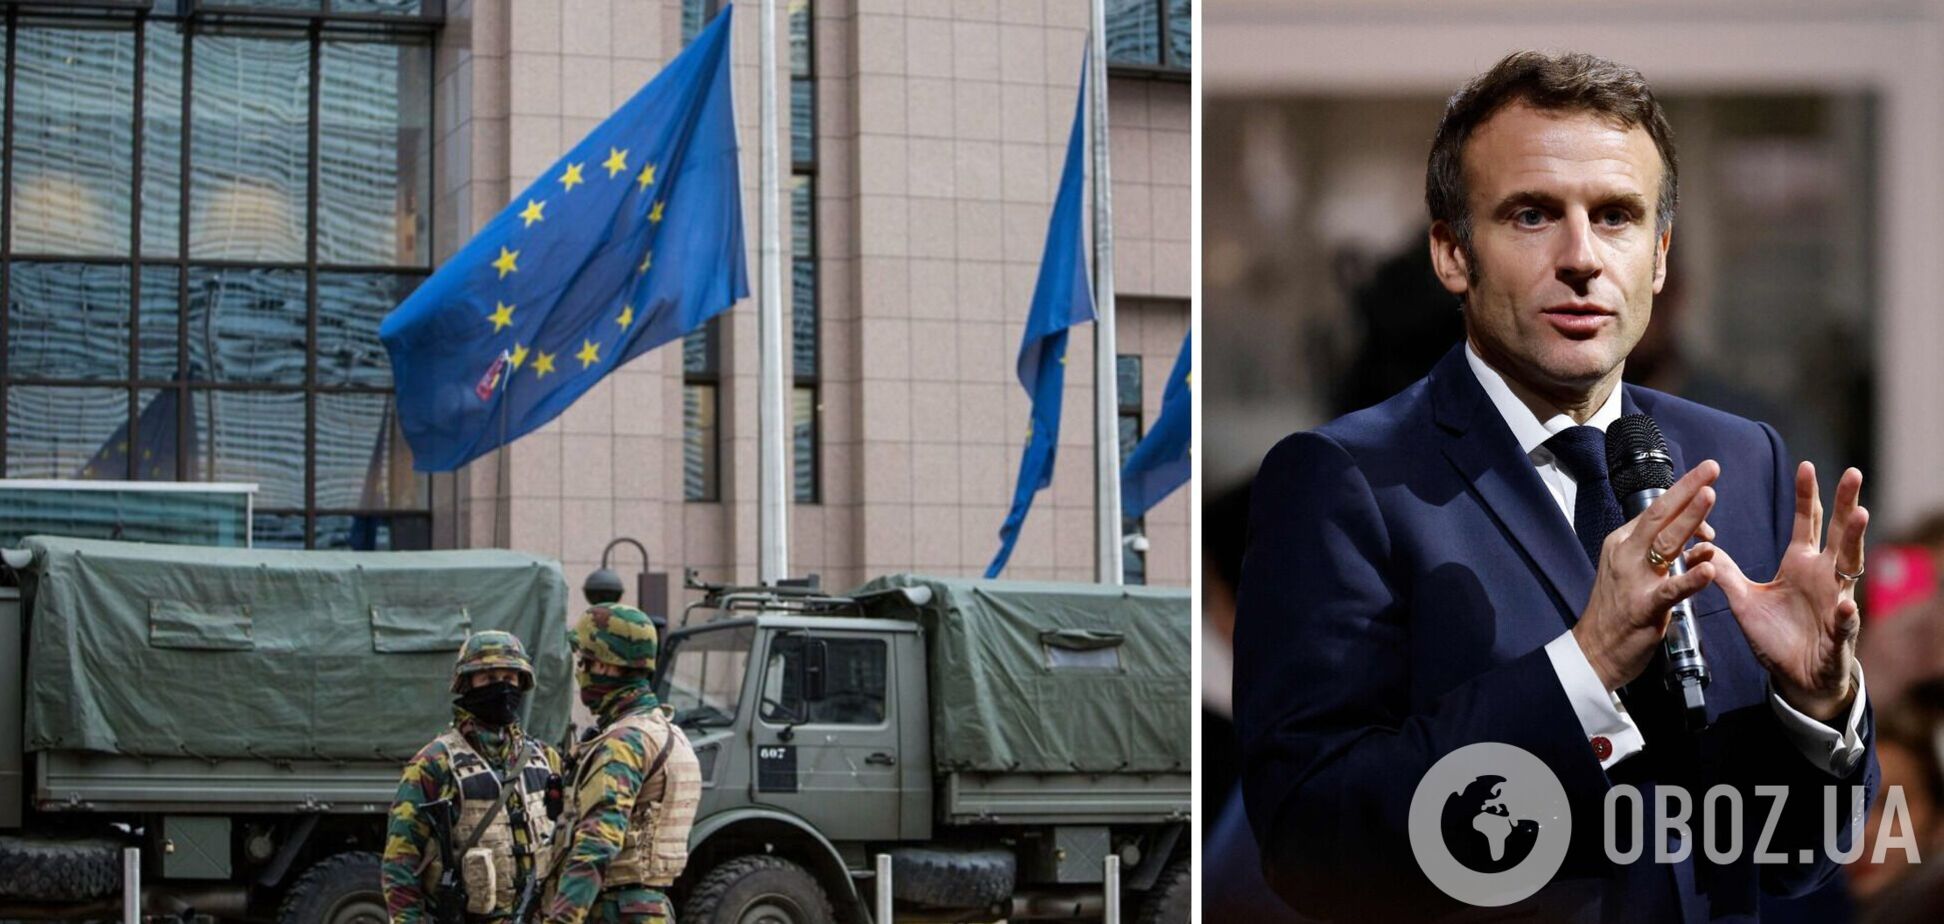 Макрон хоче очолити Європу у питанні допомоги Україні: Politico вказала на проблему
